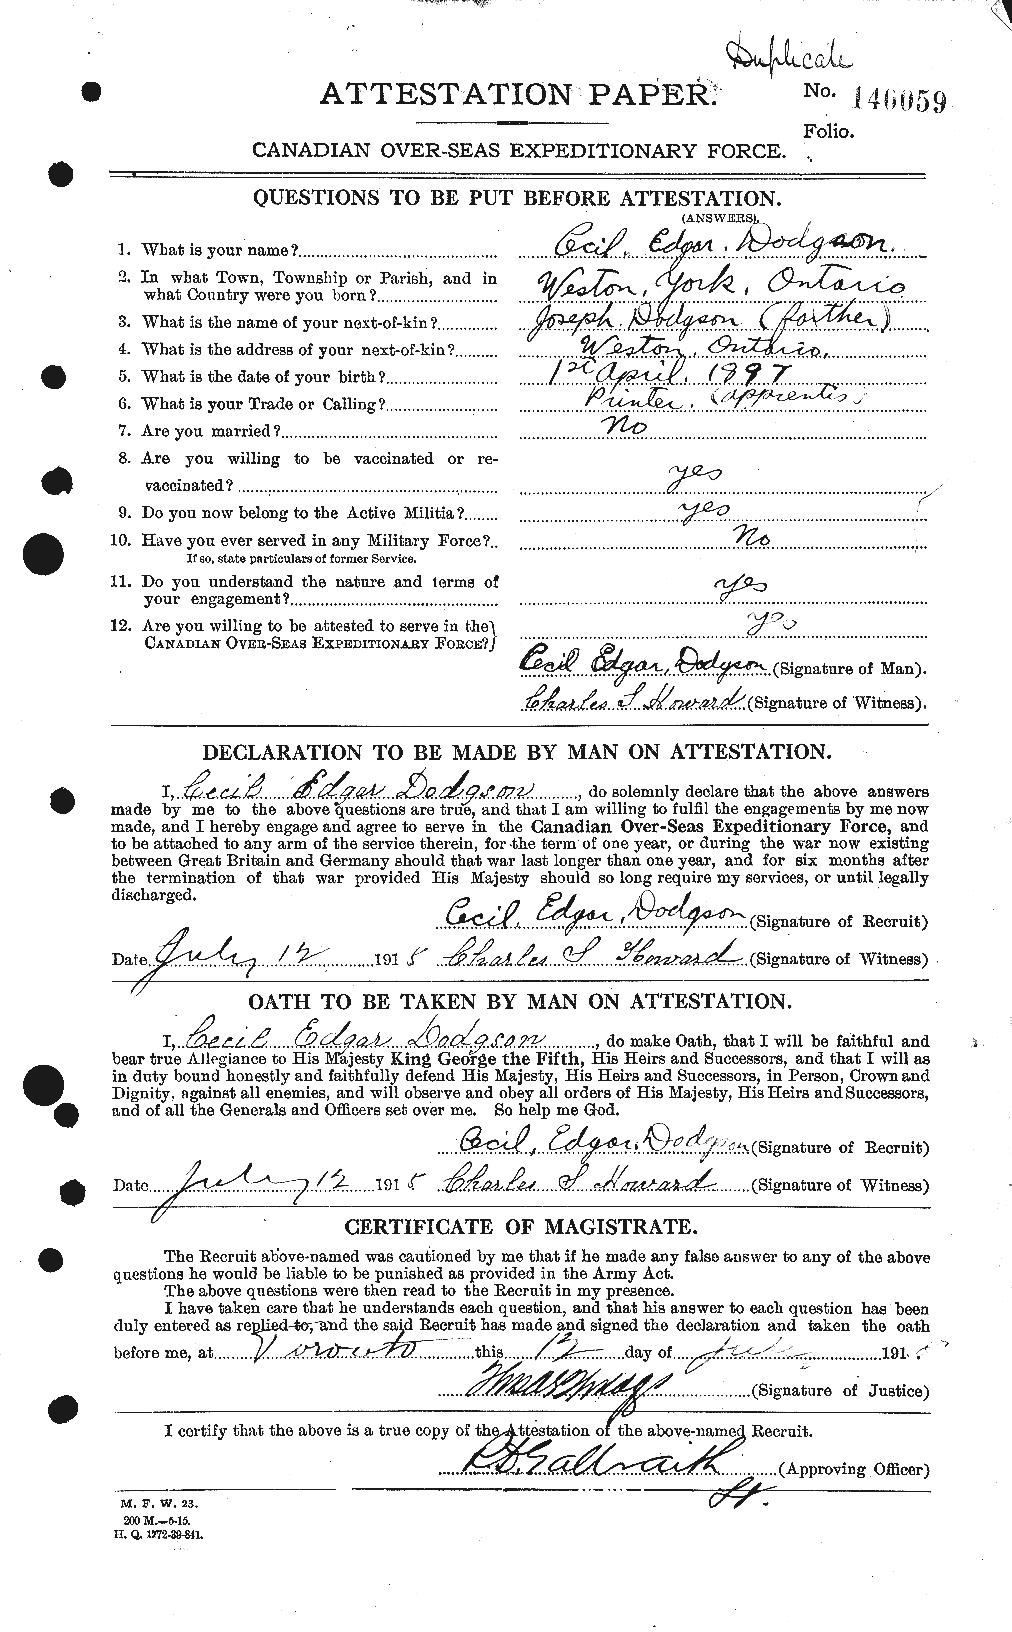 Dossiers du Personnel de la Première Guerre mondiale - CEC 294495a